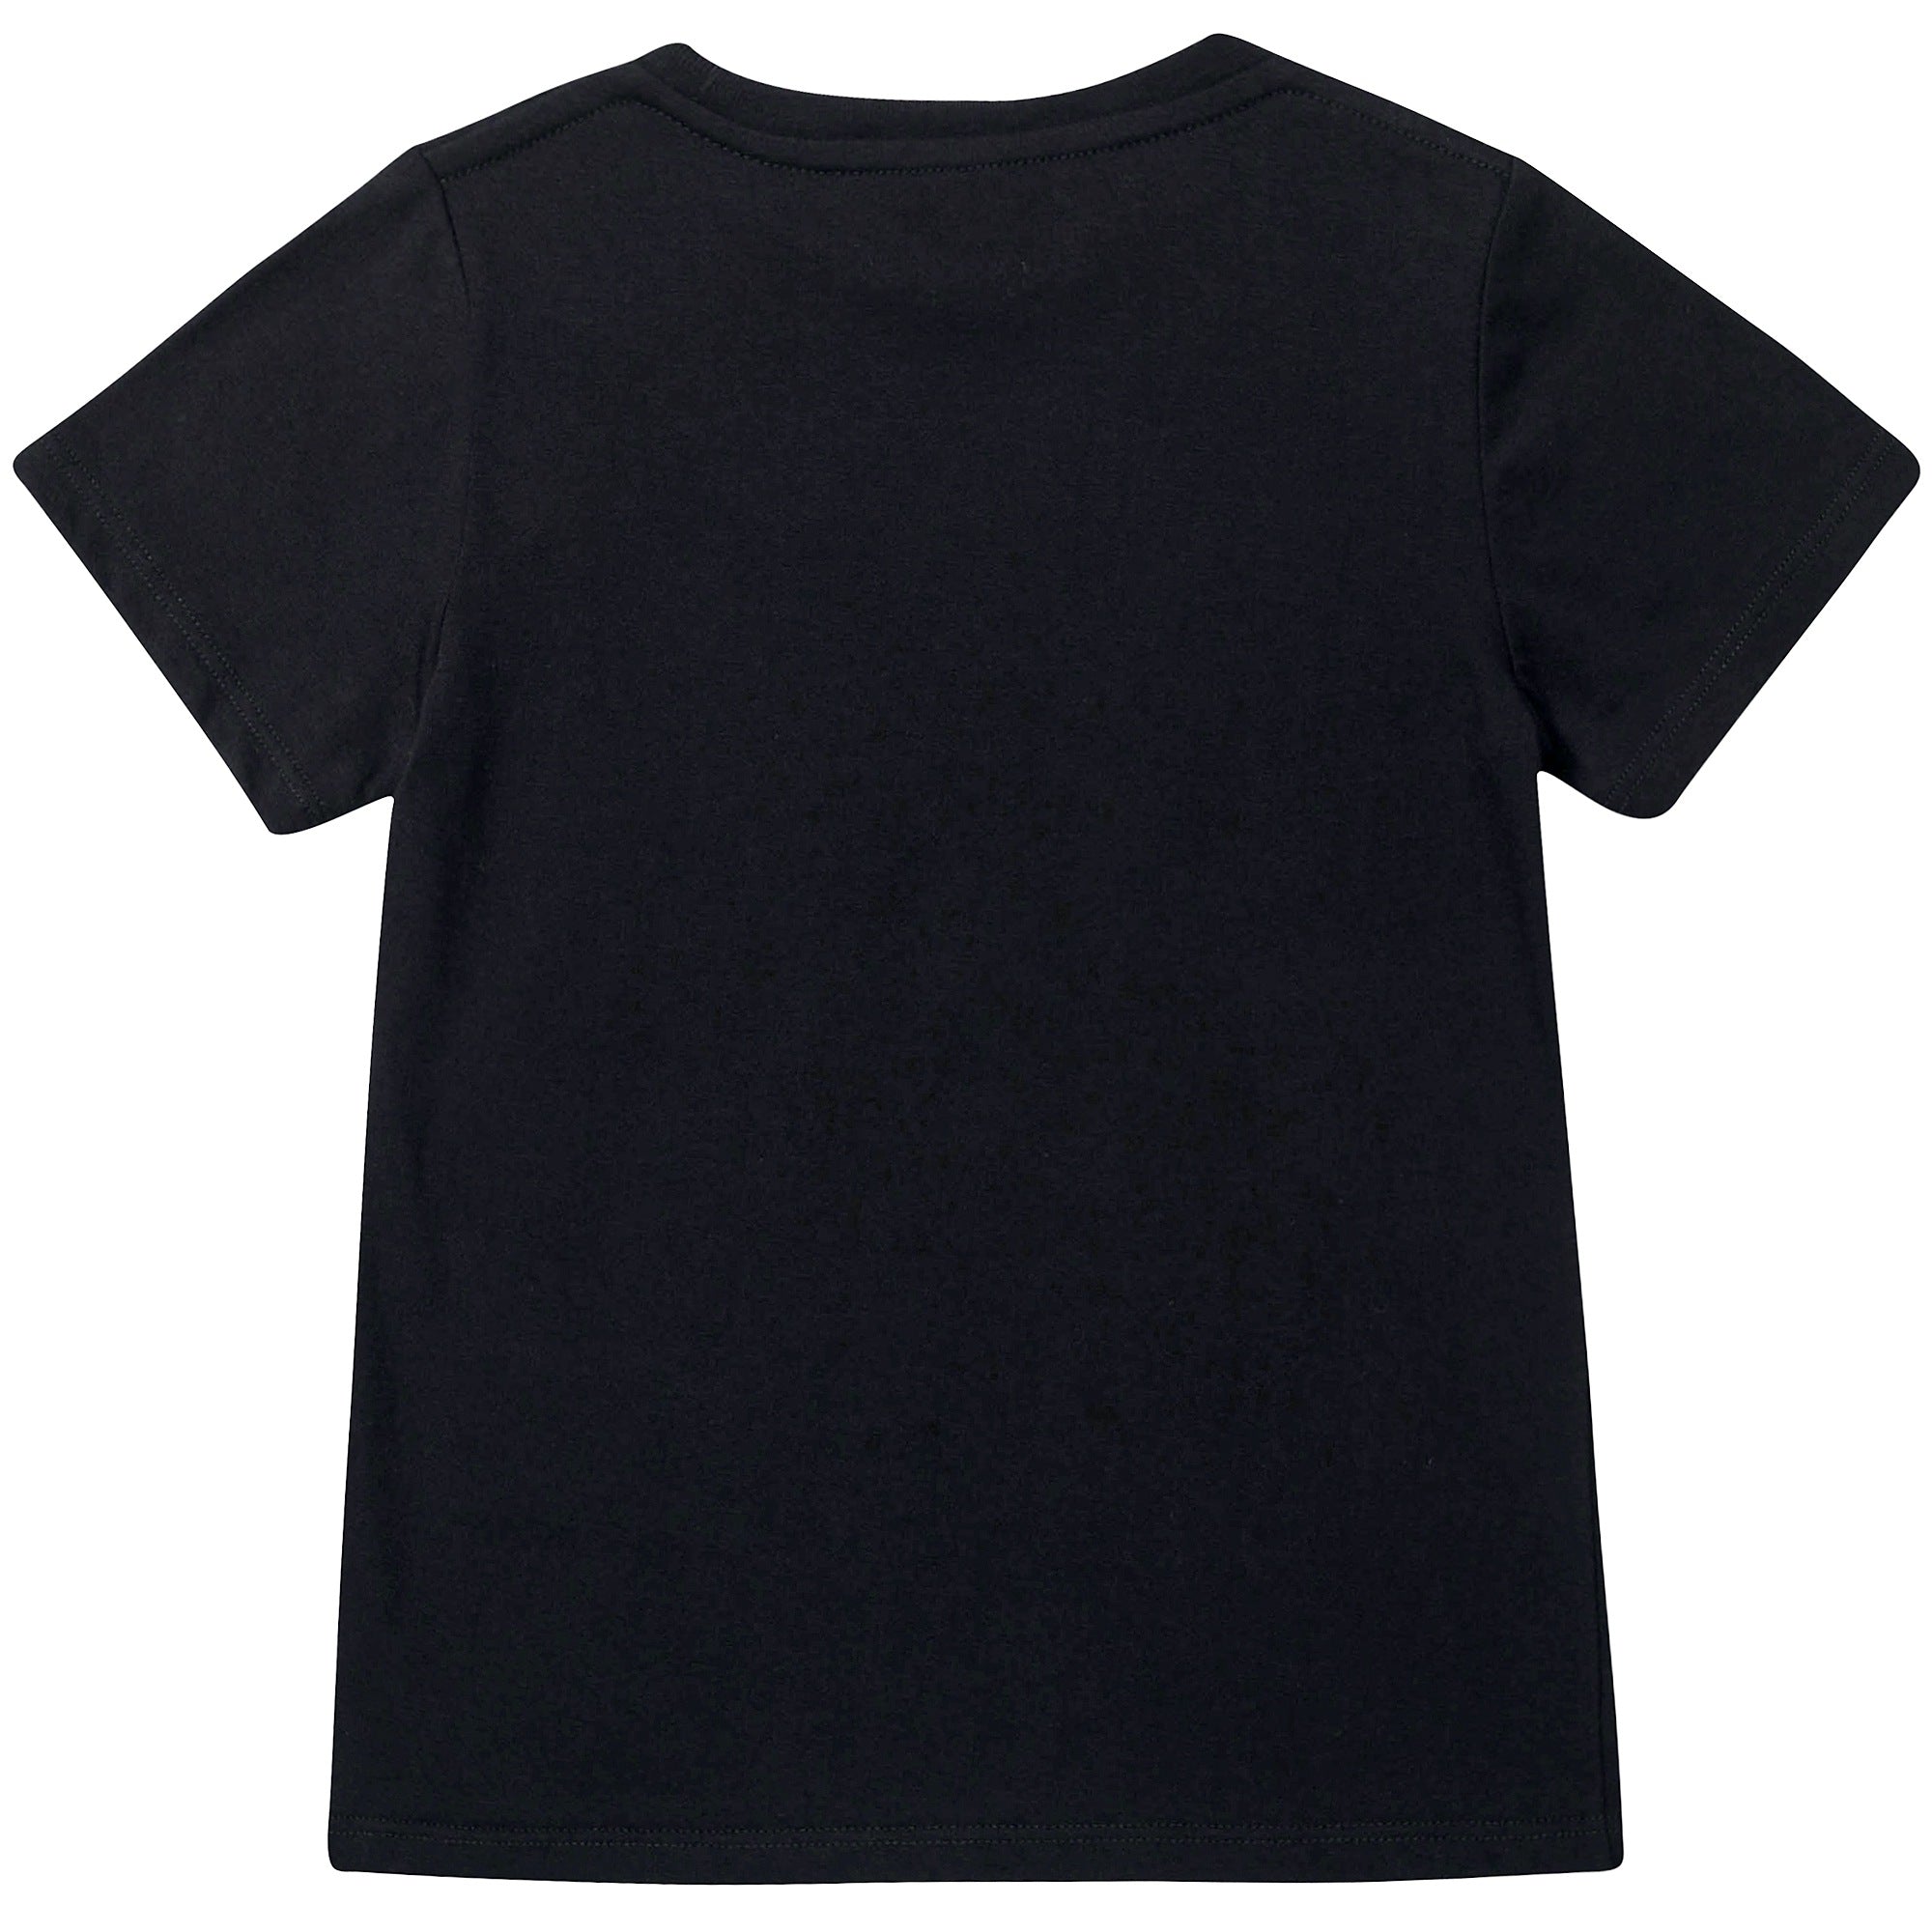 Boys Black "GG" Cotton T-shirt